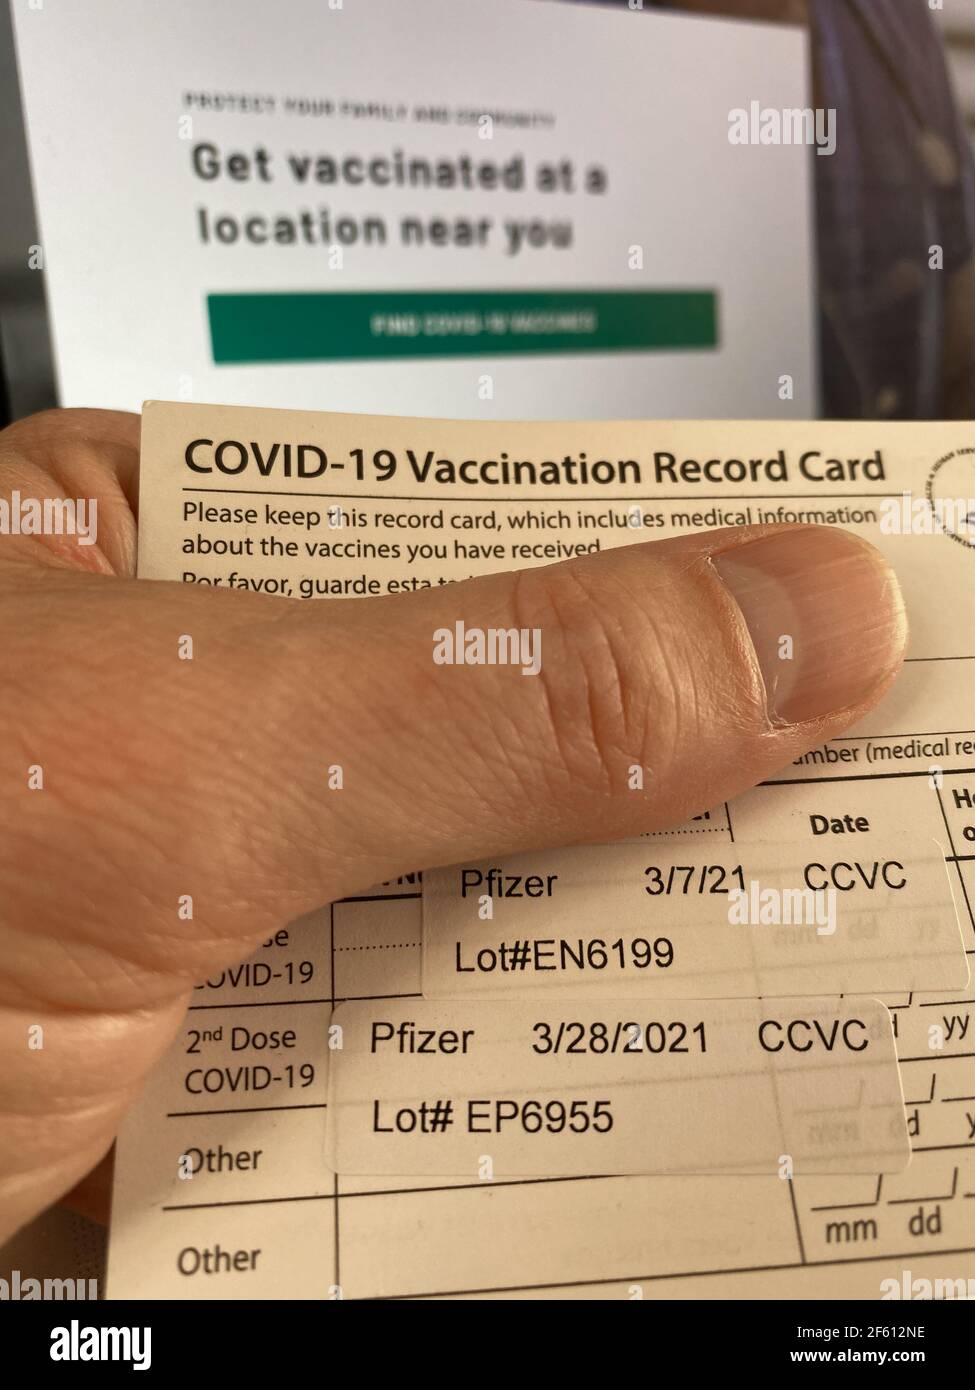 Philadelphia, PA, 29th de marzo de 2021, EE.UU. - CDC COVID-29 Tarjeta de registro de vacunación que muestra que el receptor recibió 2 inyecciones de la vacuna Pfizer crédito: Don Mennig/Alamy Live News Foto de stock